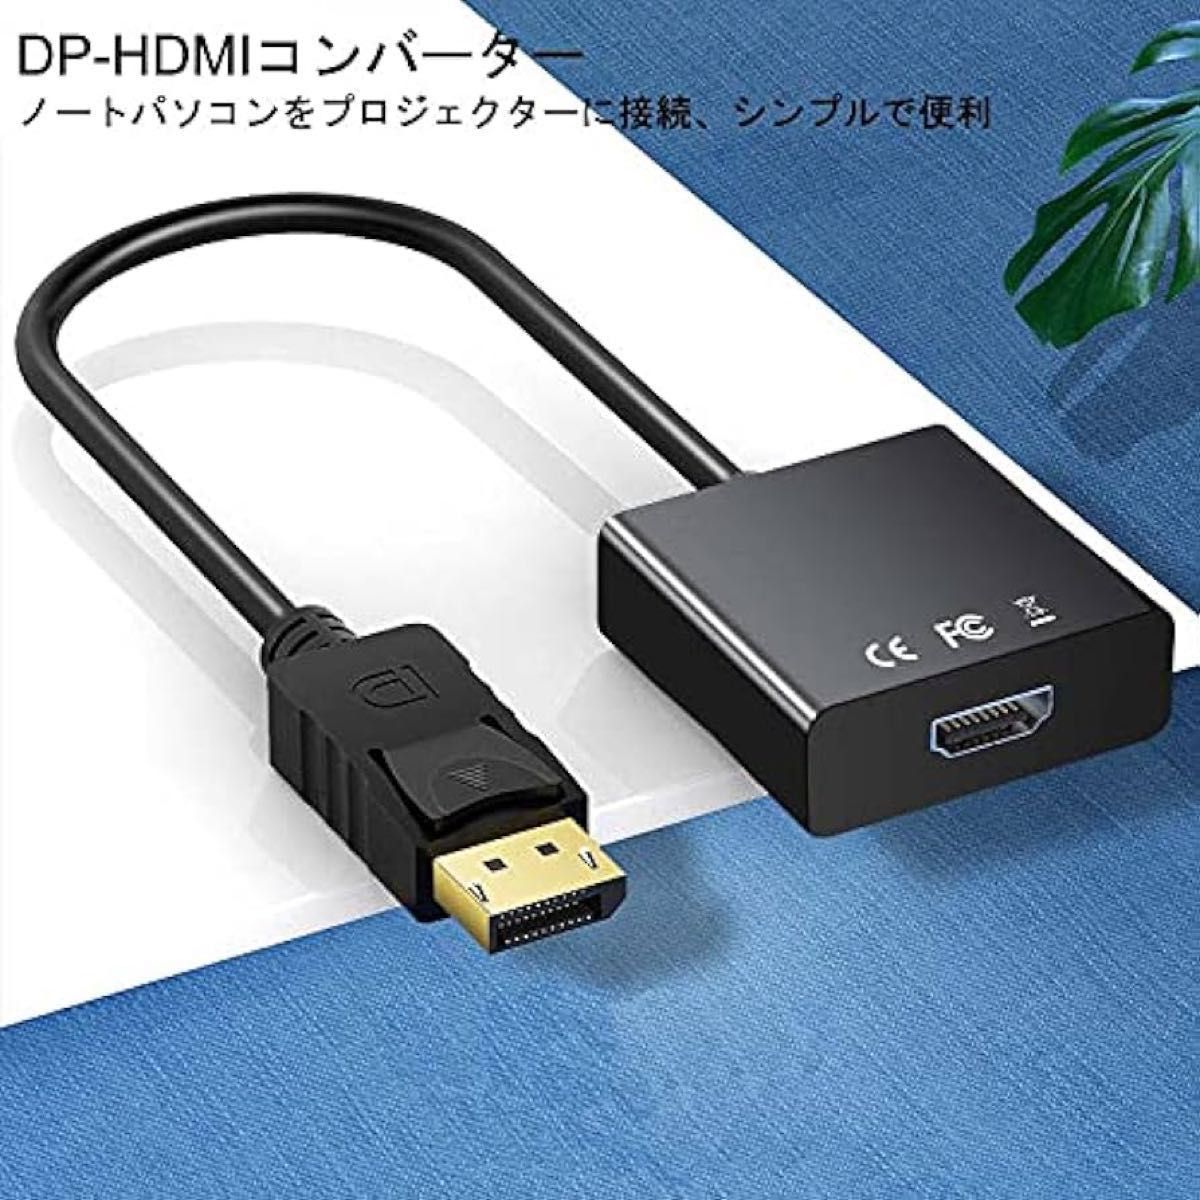 HDMI 変換アダプタ DP HDMI 変換モニター、HDTVなど対応